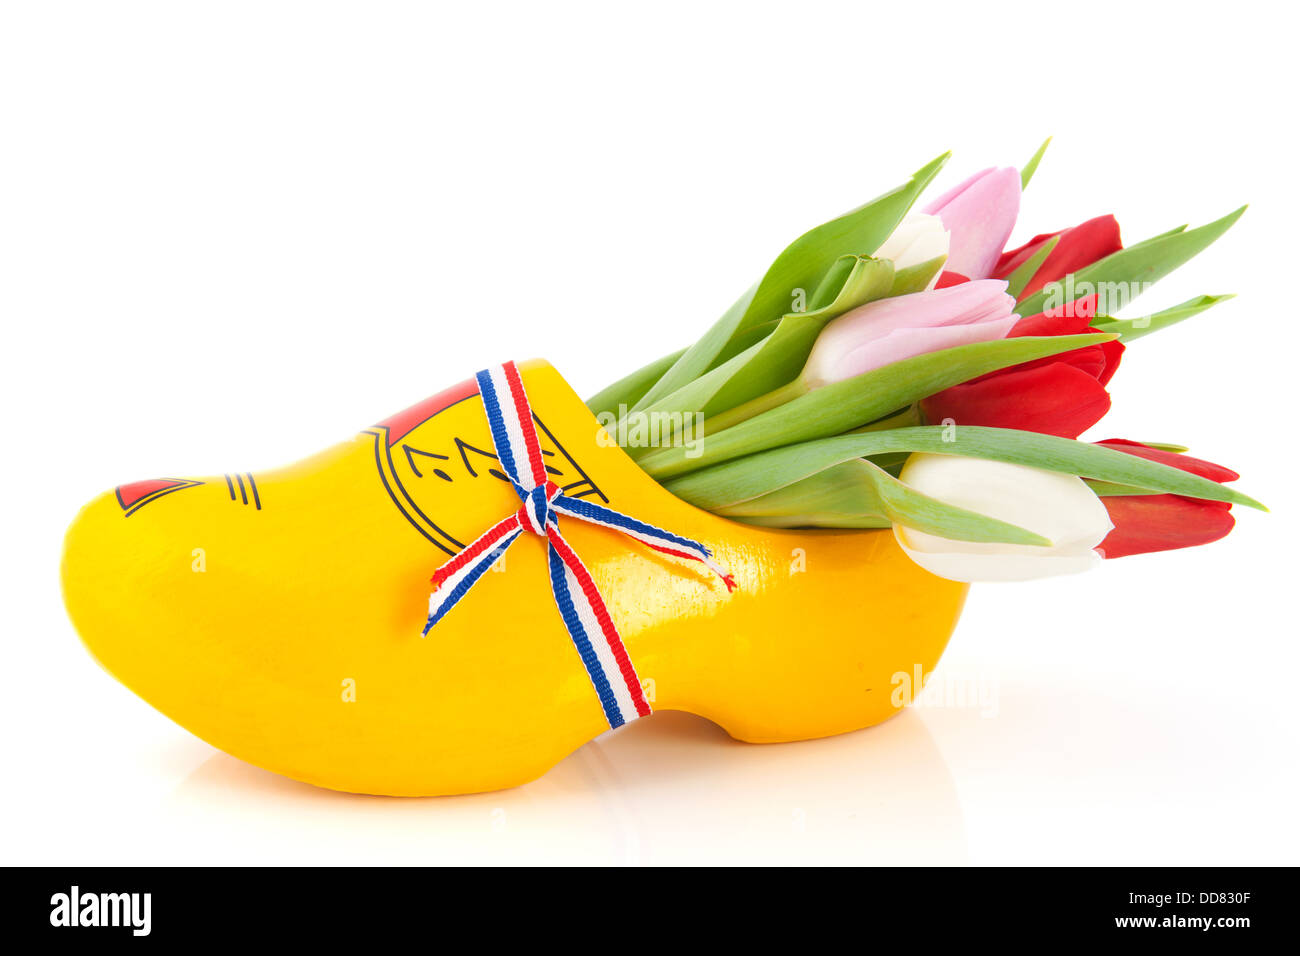 Sabots en bois avec des tulipes hollandais Photo Stock - Alamy